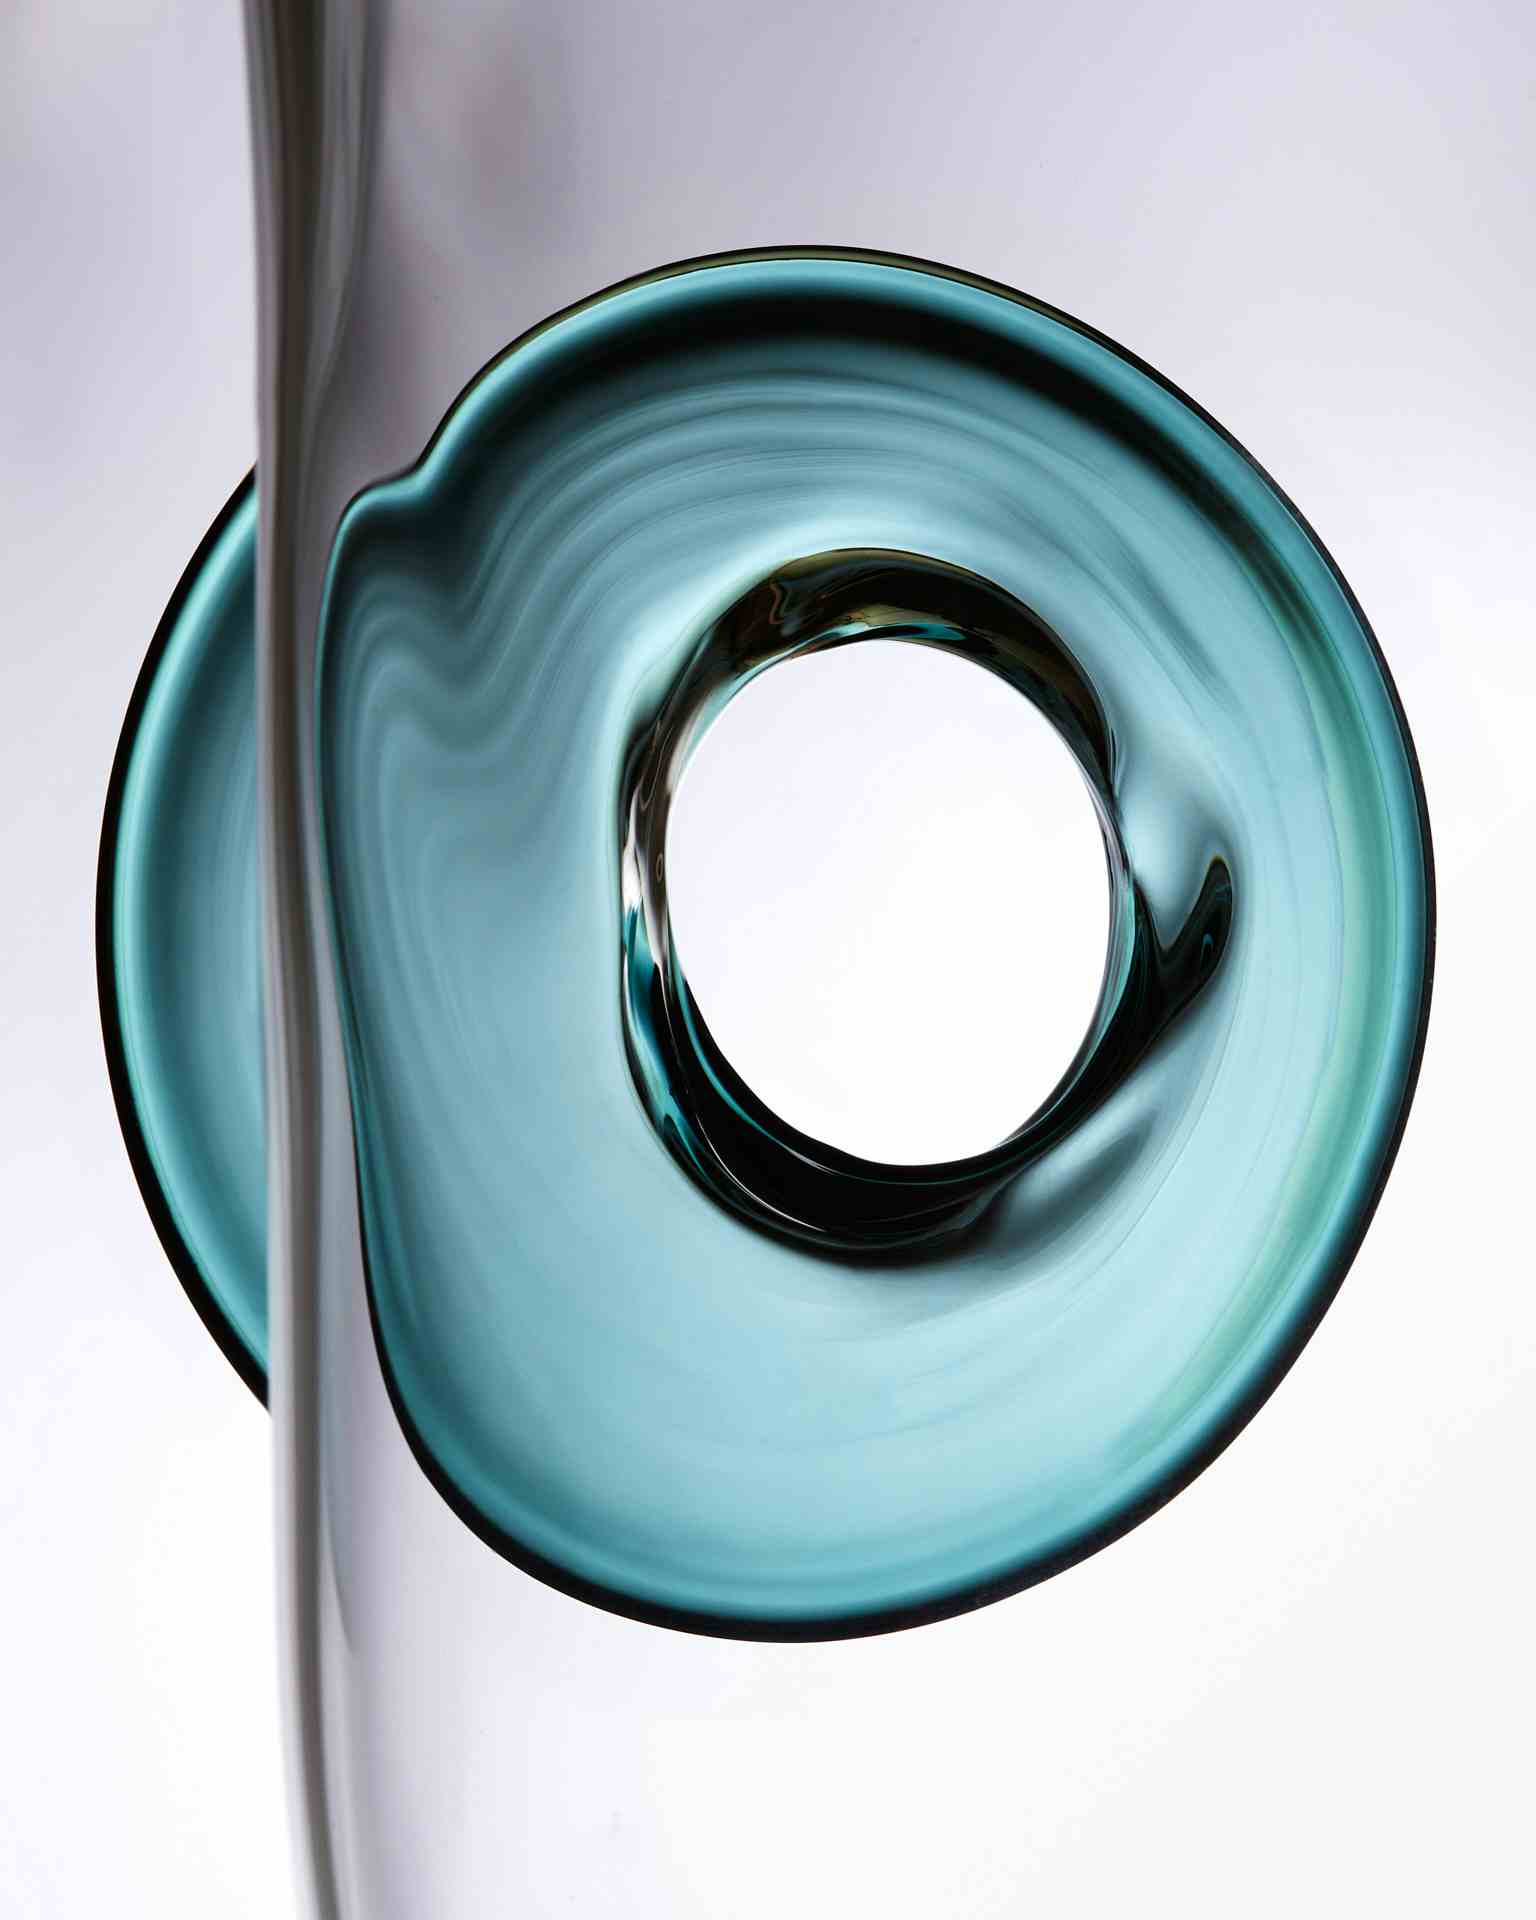 ANNA GUDAYOL GLASSWORKS BY FERRAN COLLADO | COLLAB.